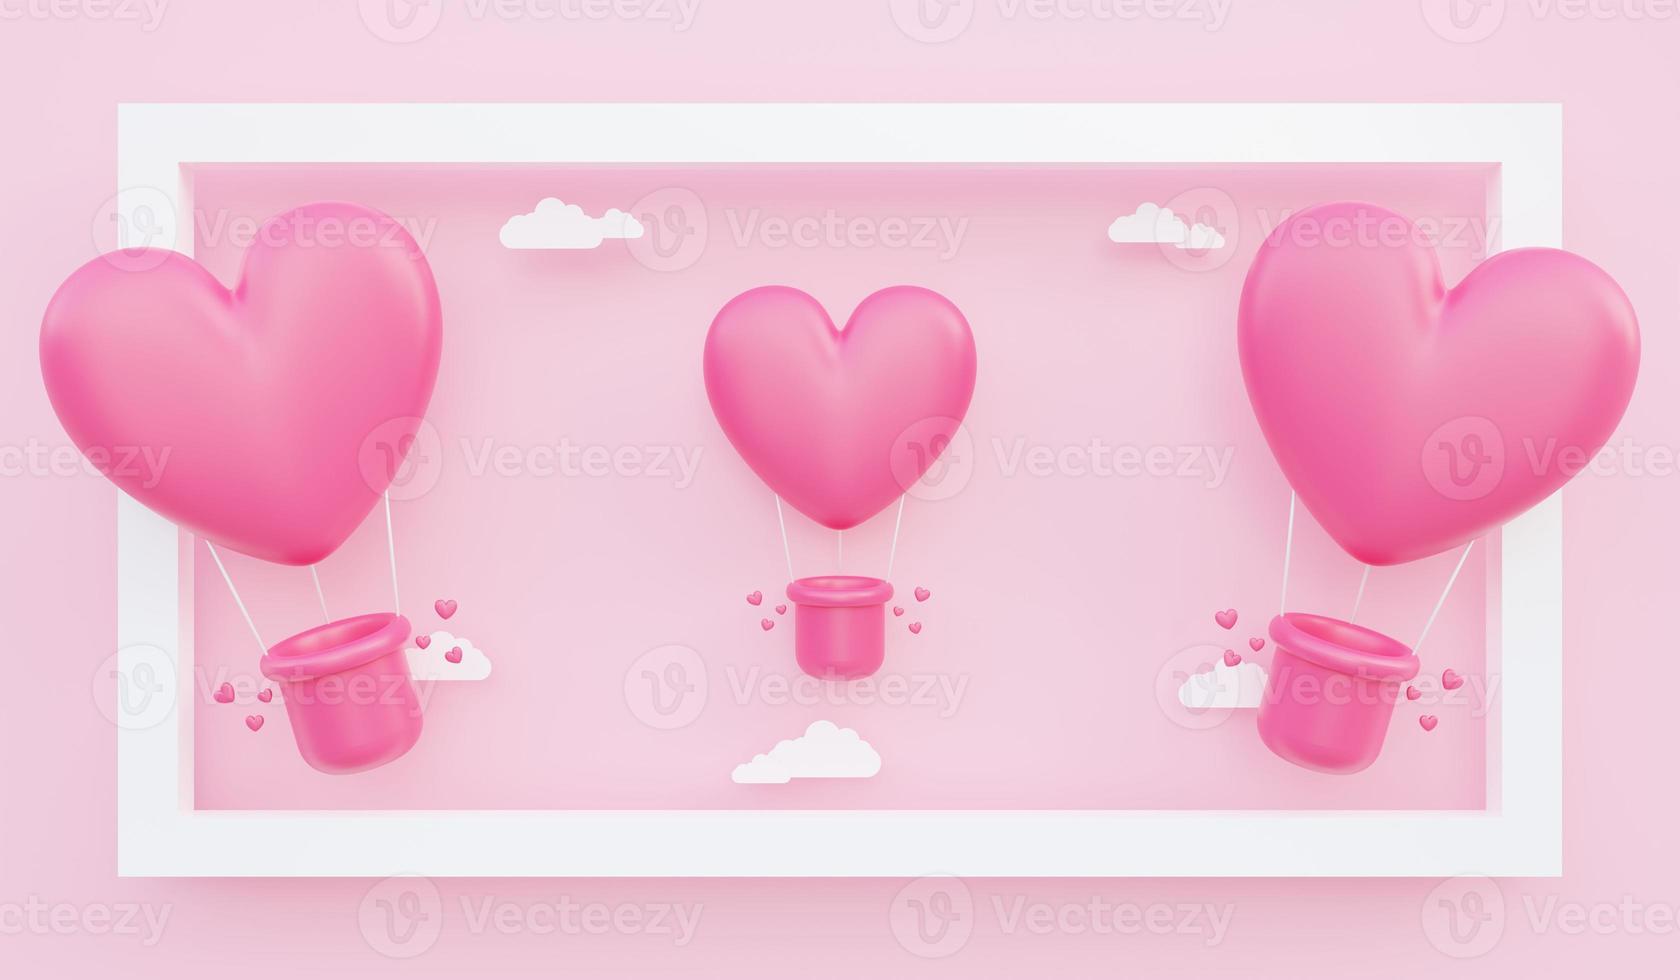 il giorno di san valentino, illustrazione 3d di mongolfiere rosa a forma di cuore che galleggiano fuori dalla cornice con nuvole di carta foto